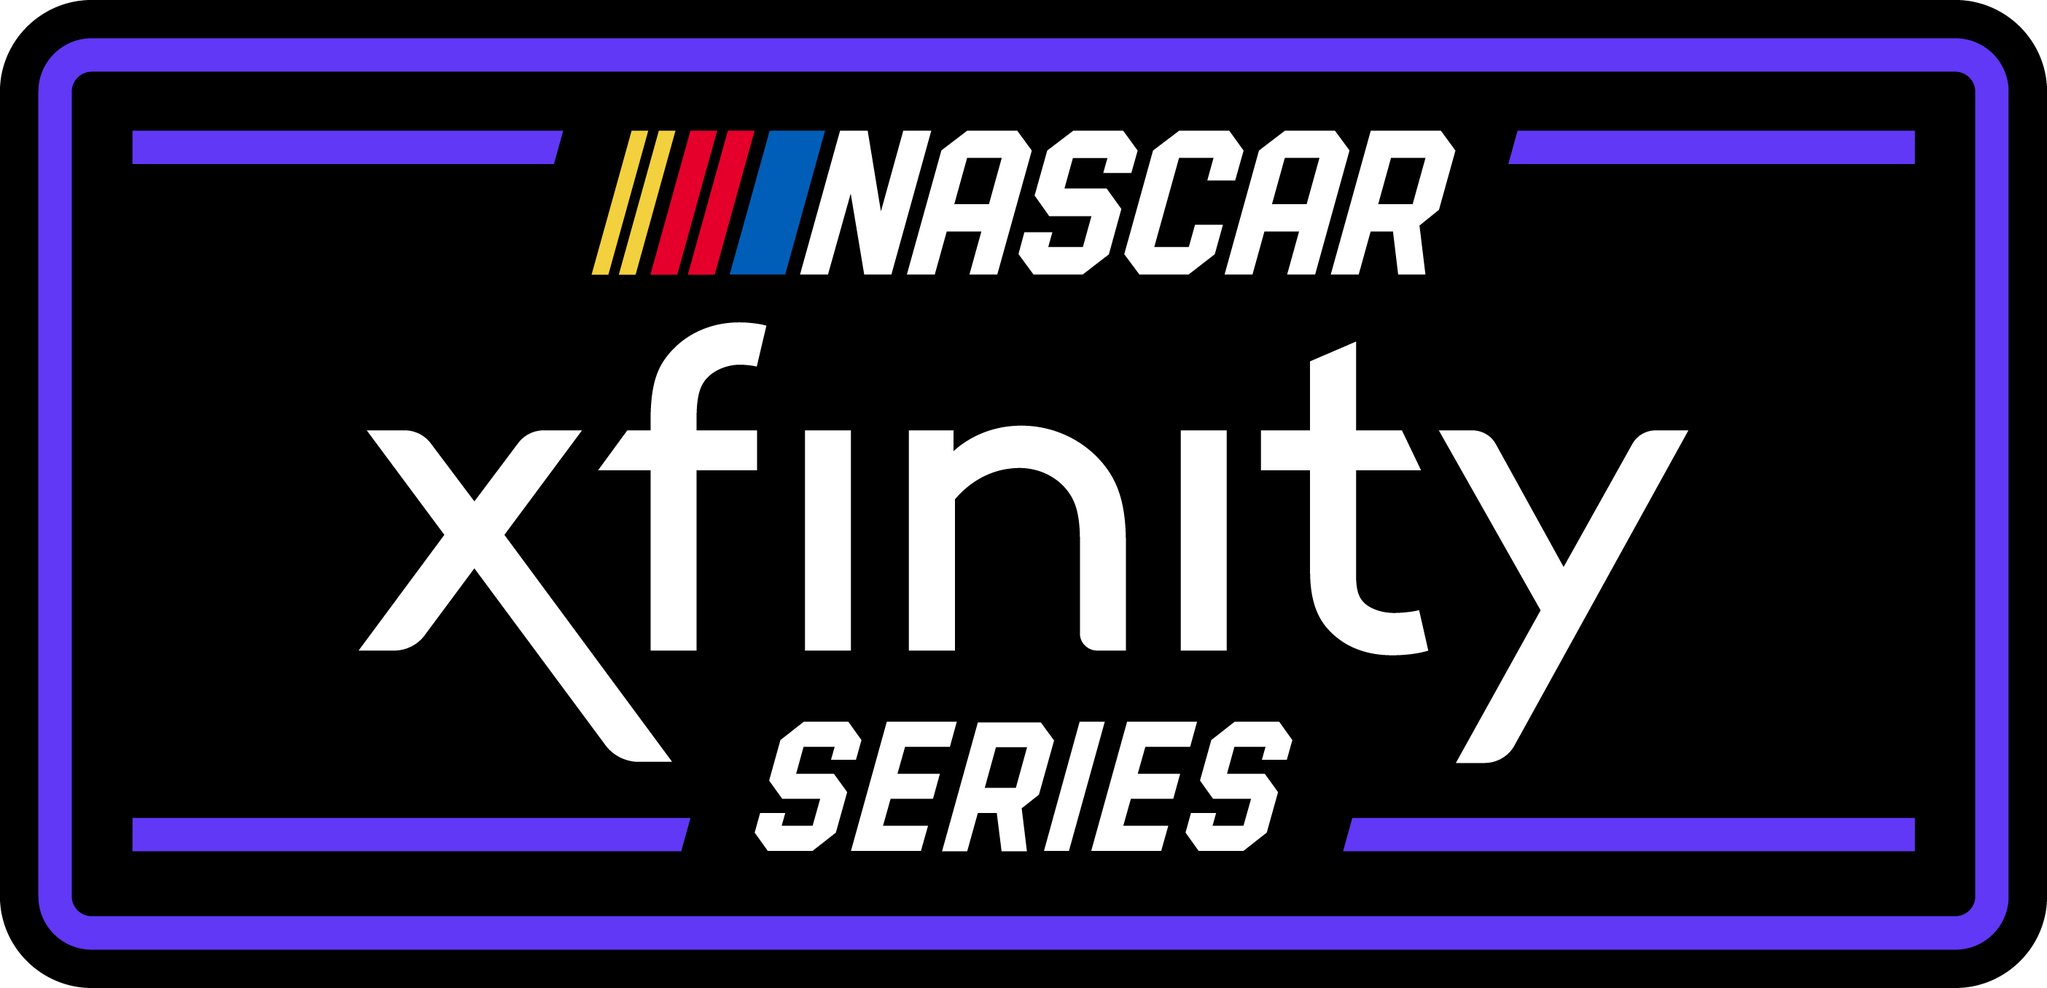 Xfinity Series Stock Car Racing Wiki Fandom